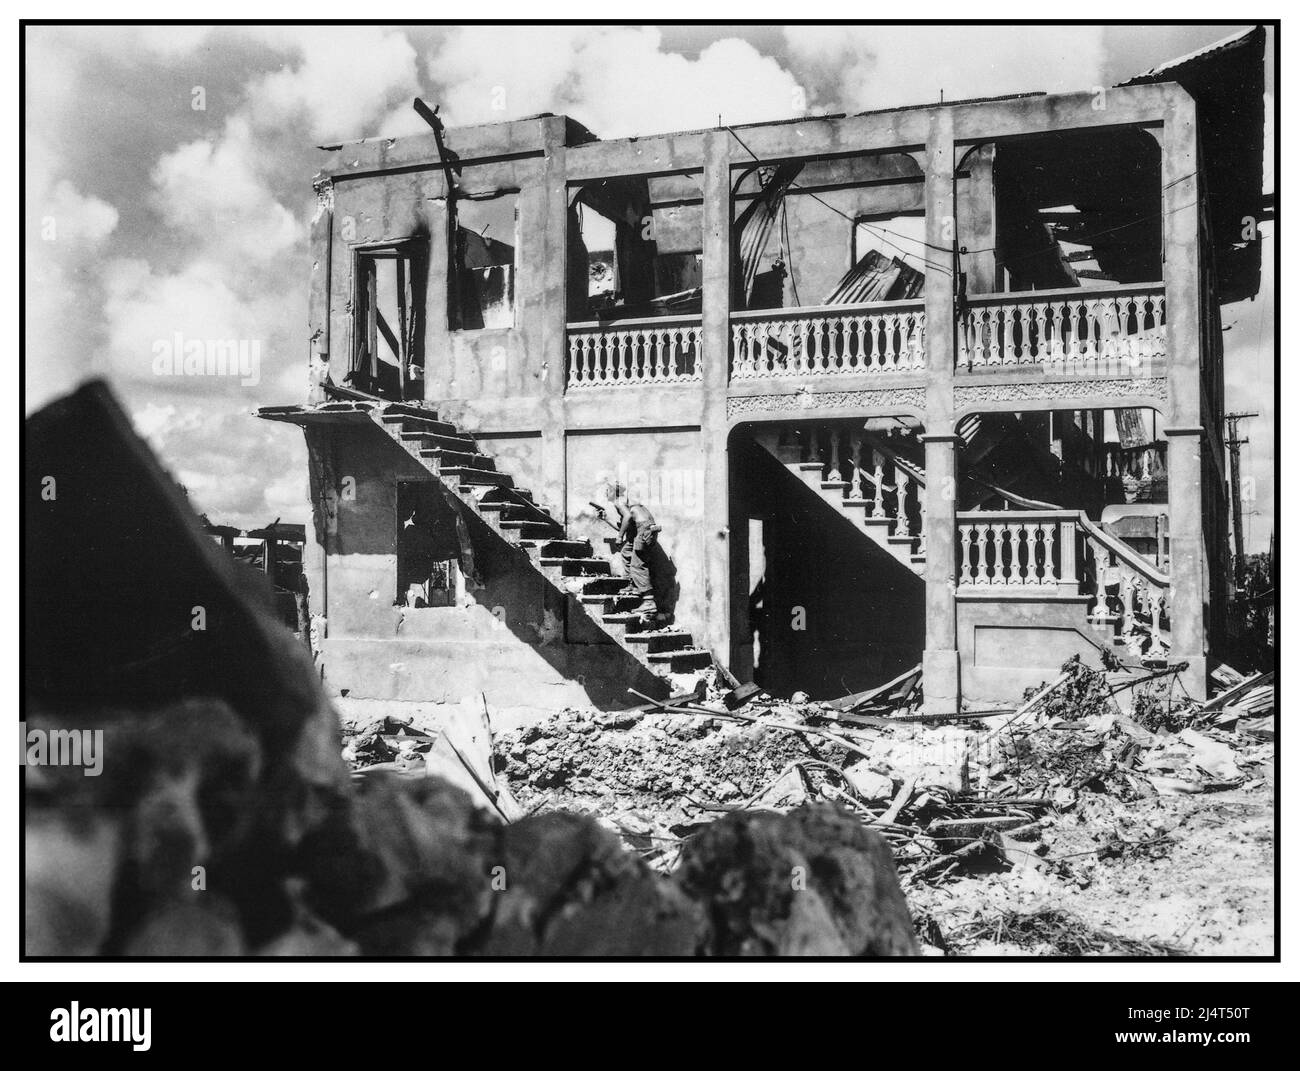 WW2 Schlacht von Guam Ein Marine der Dritten Marine Division geht Haus zu Haus Clearing nach einem japanischen Scharfschützen in einem geschälten Gebäude. Guam, August 1944 Zweiten Weltkrieg Zweiten Weltkrieg Stockfoto